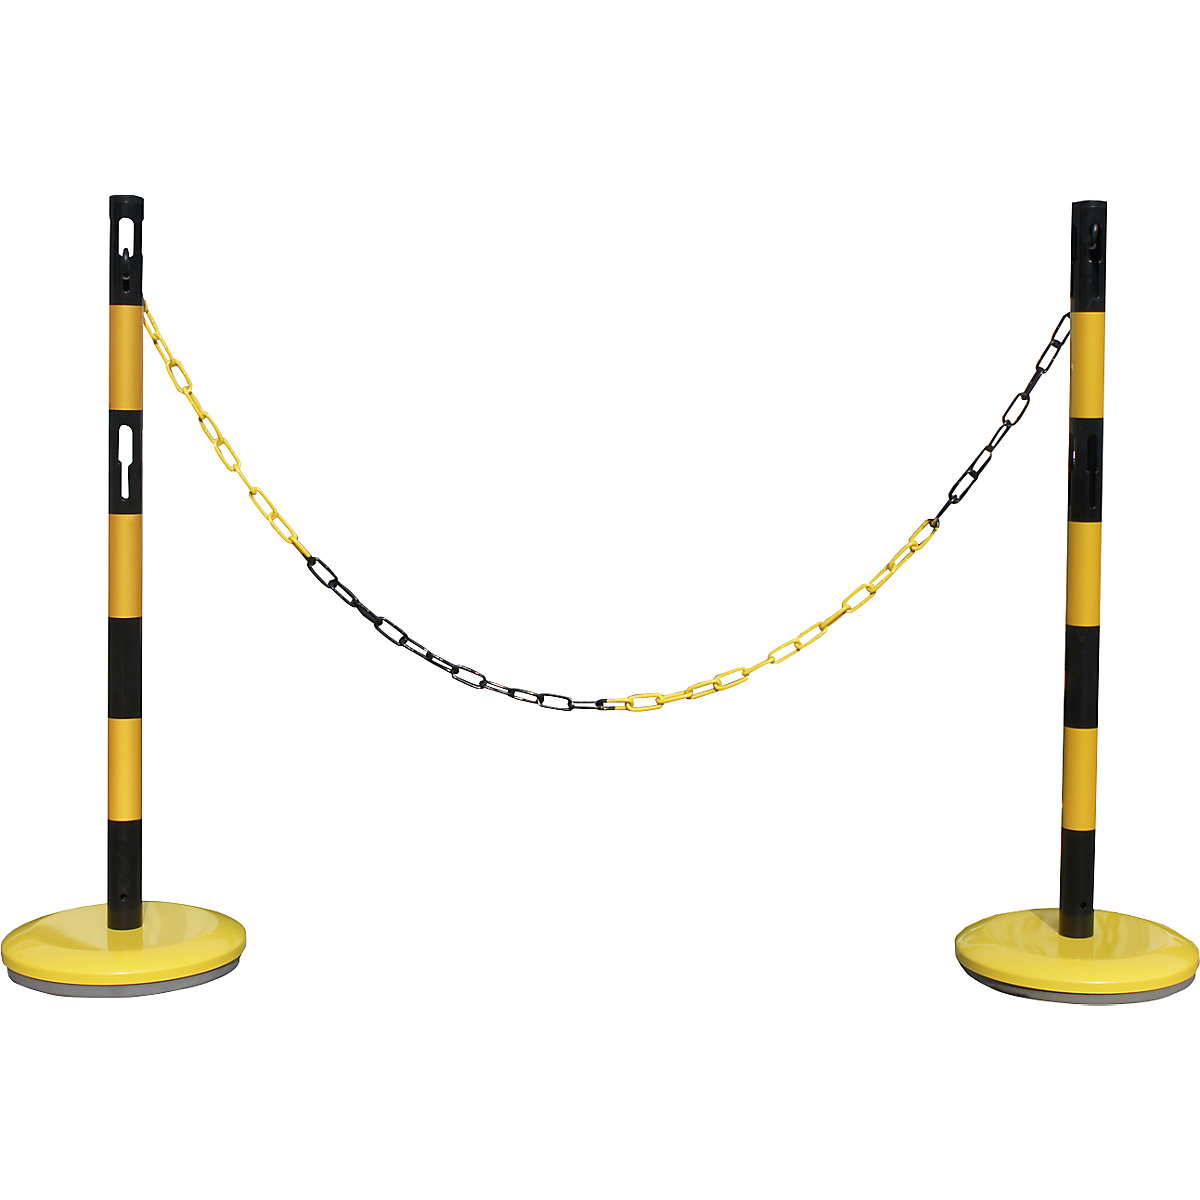 Afzetpaalset met ketting – VISO, 2 palen, ketting 2,5 m, geel/zwart-5